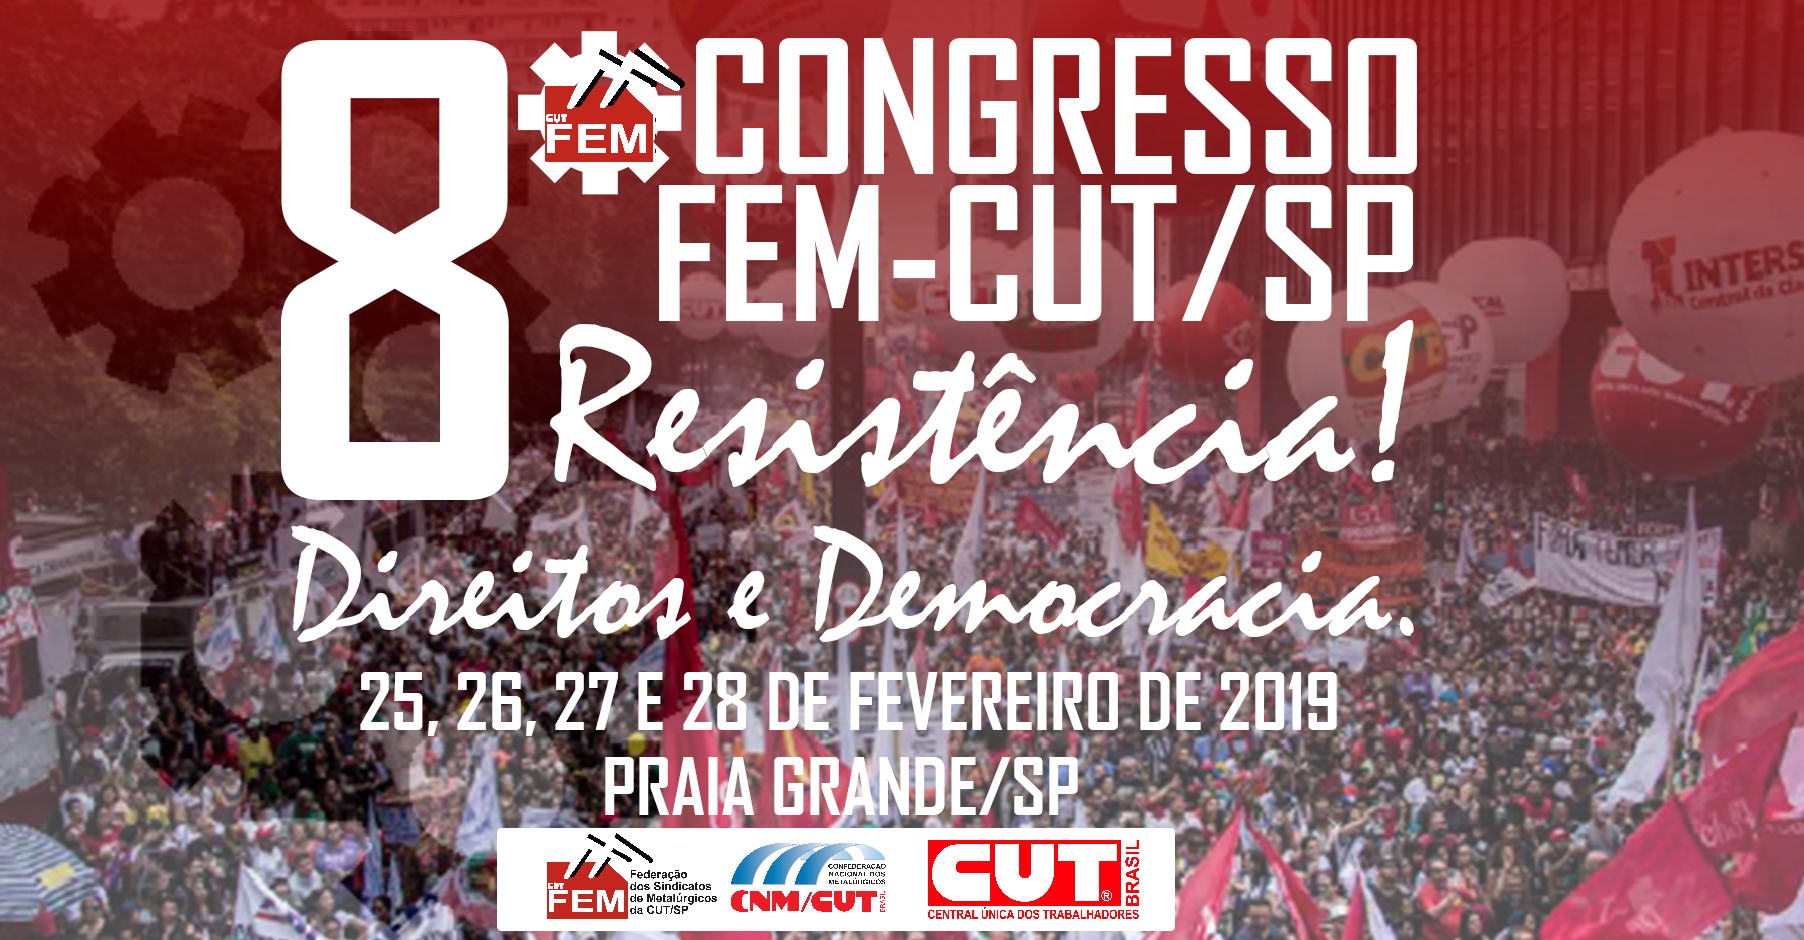 FEM-CUT/SP vai realizar 8º Congresso este mês